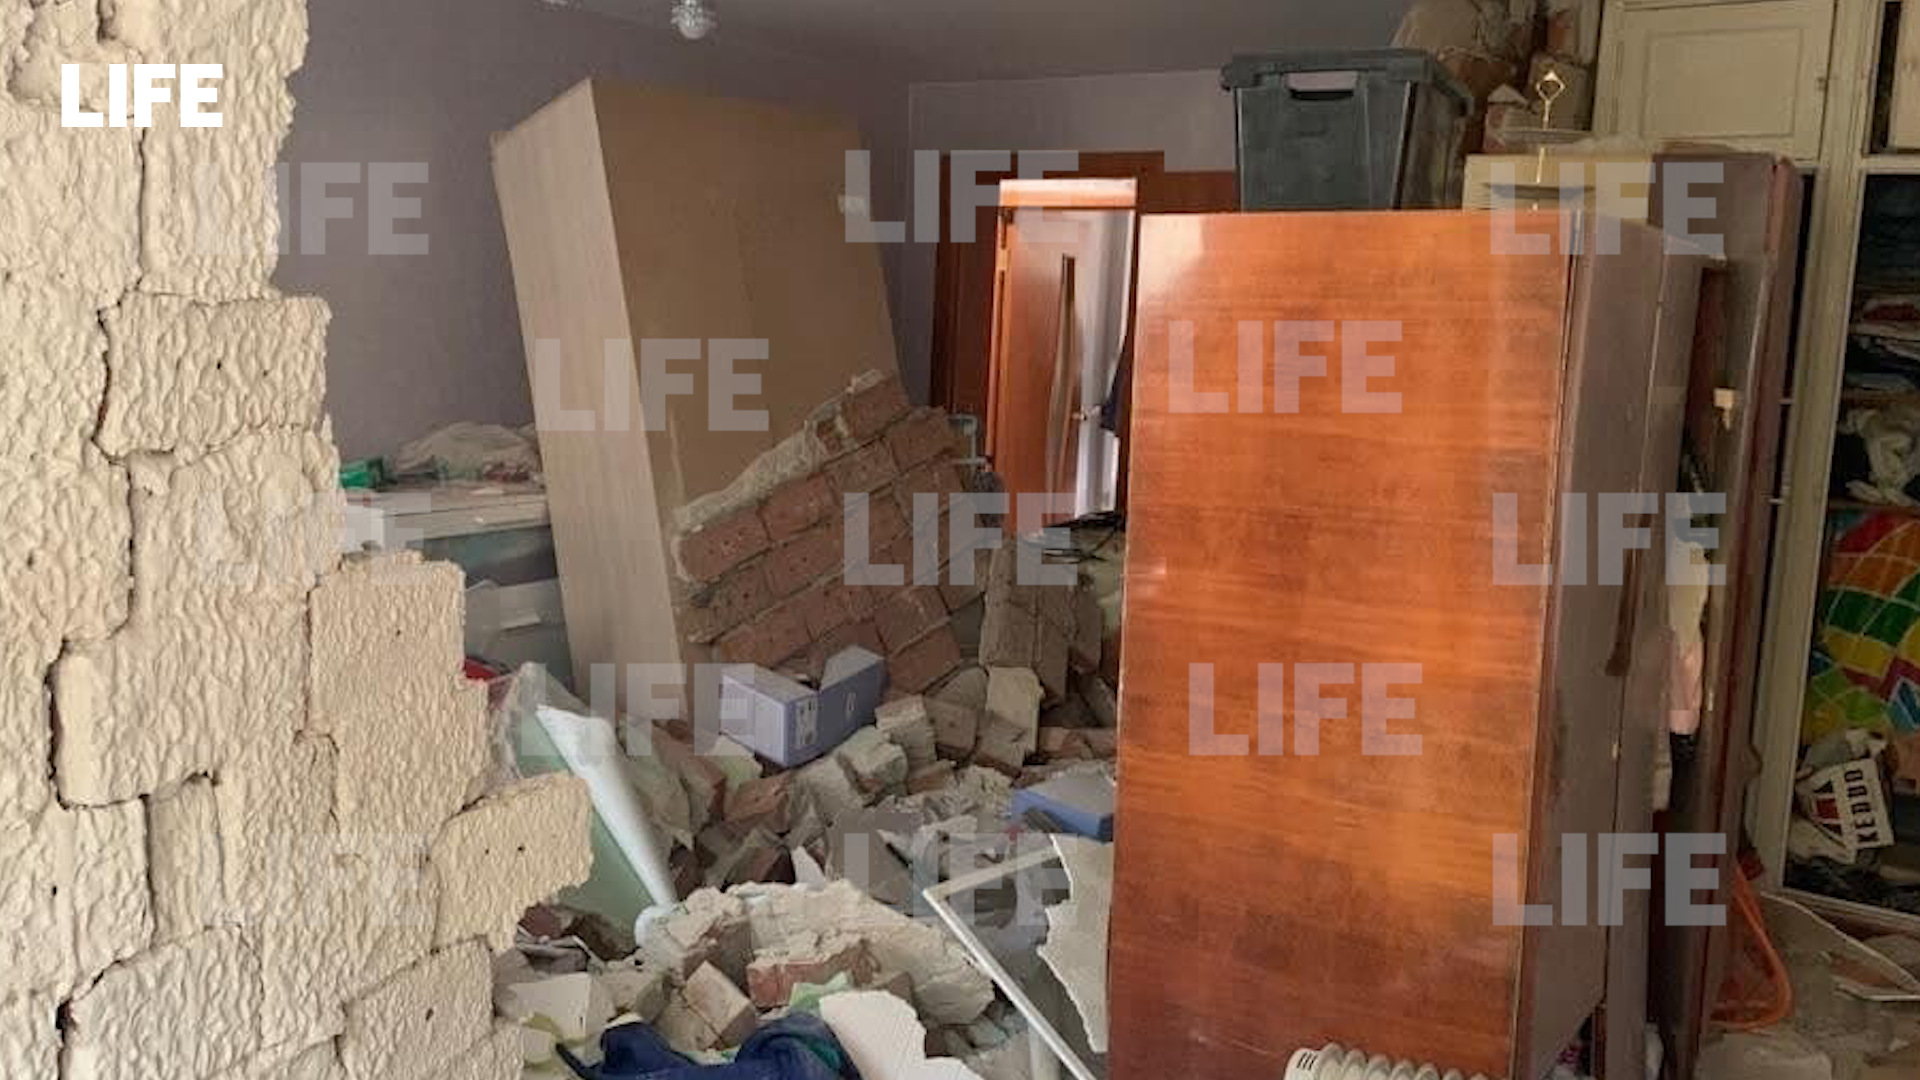 Названа предварительная причина взрыва газа в жилом доме в Свердловской области